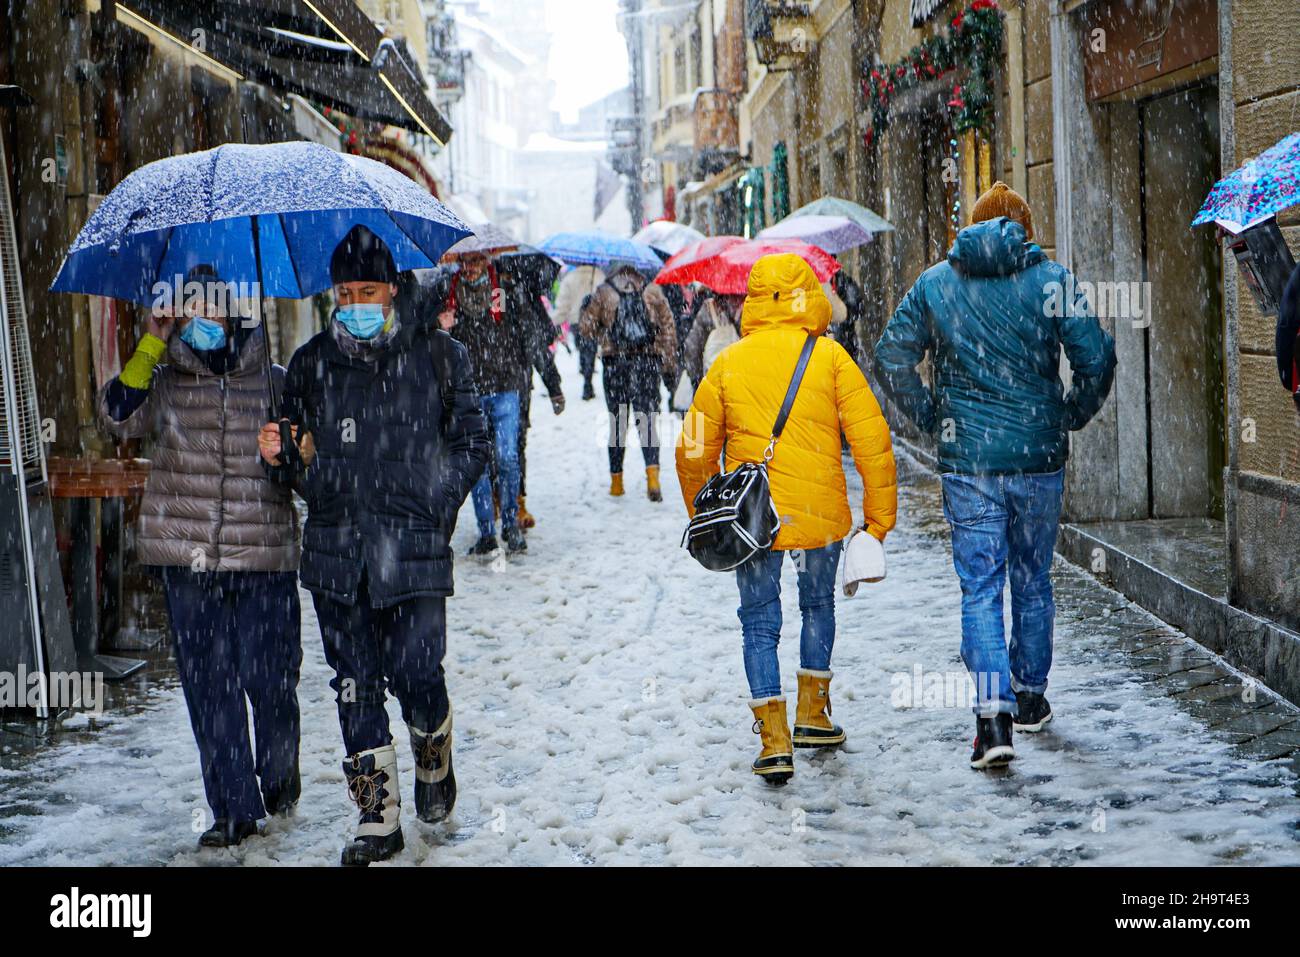 La ville a été couverte par une tempête de neige, le froid, le changement climatique, les gens marchent sous la tempête de neige.Aoste, Italie -décembre 2021 Banque D'Images